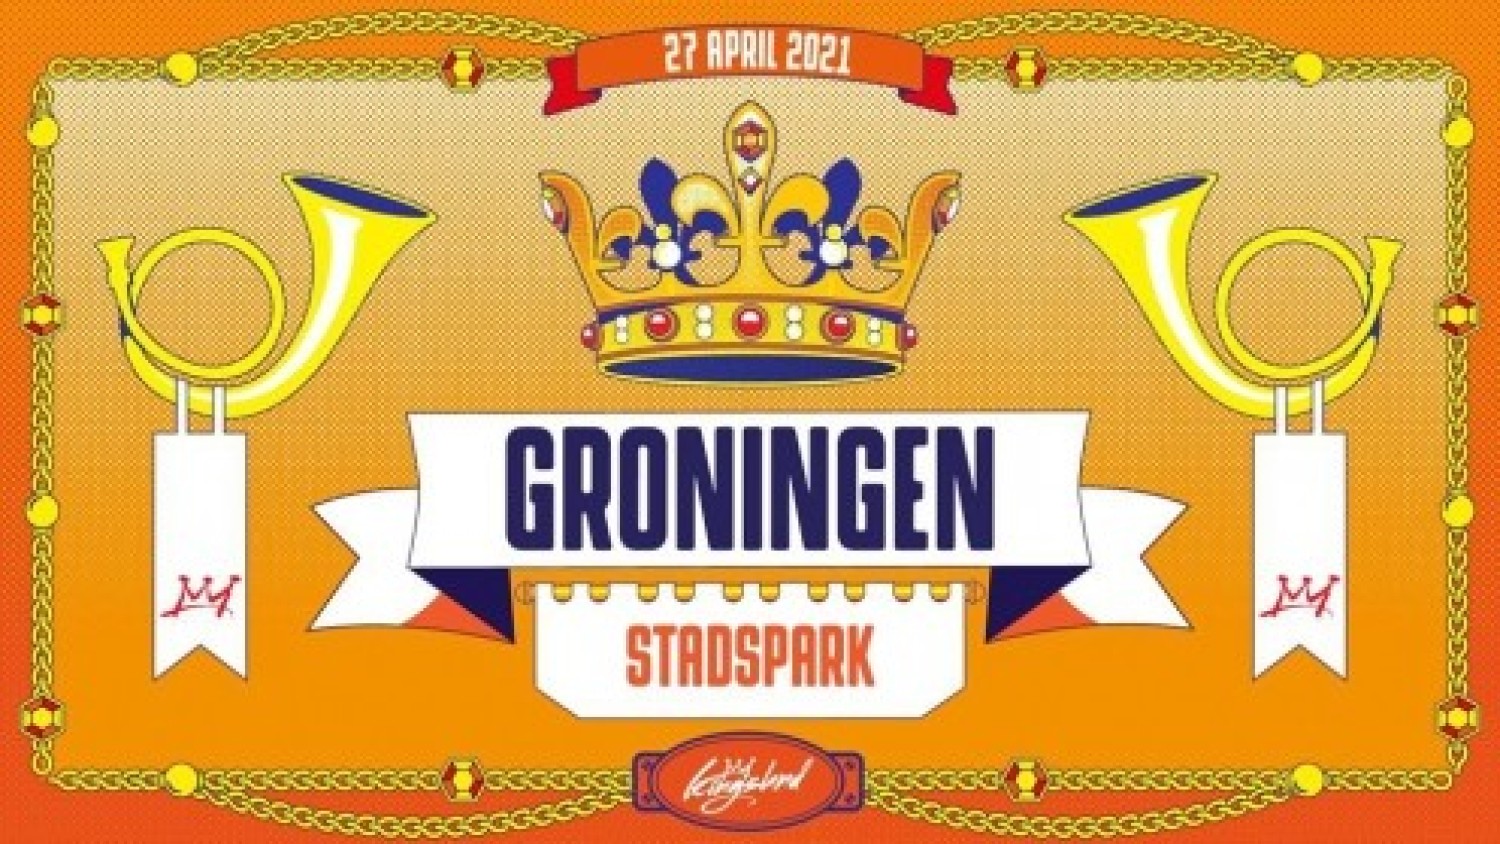 Kingsland Festival Groningen